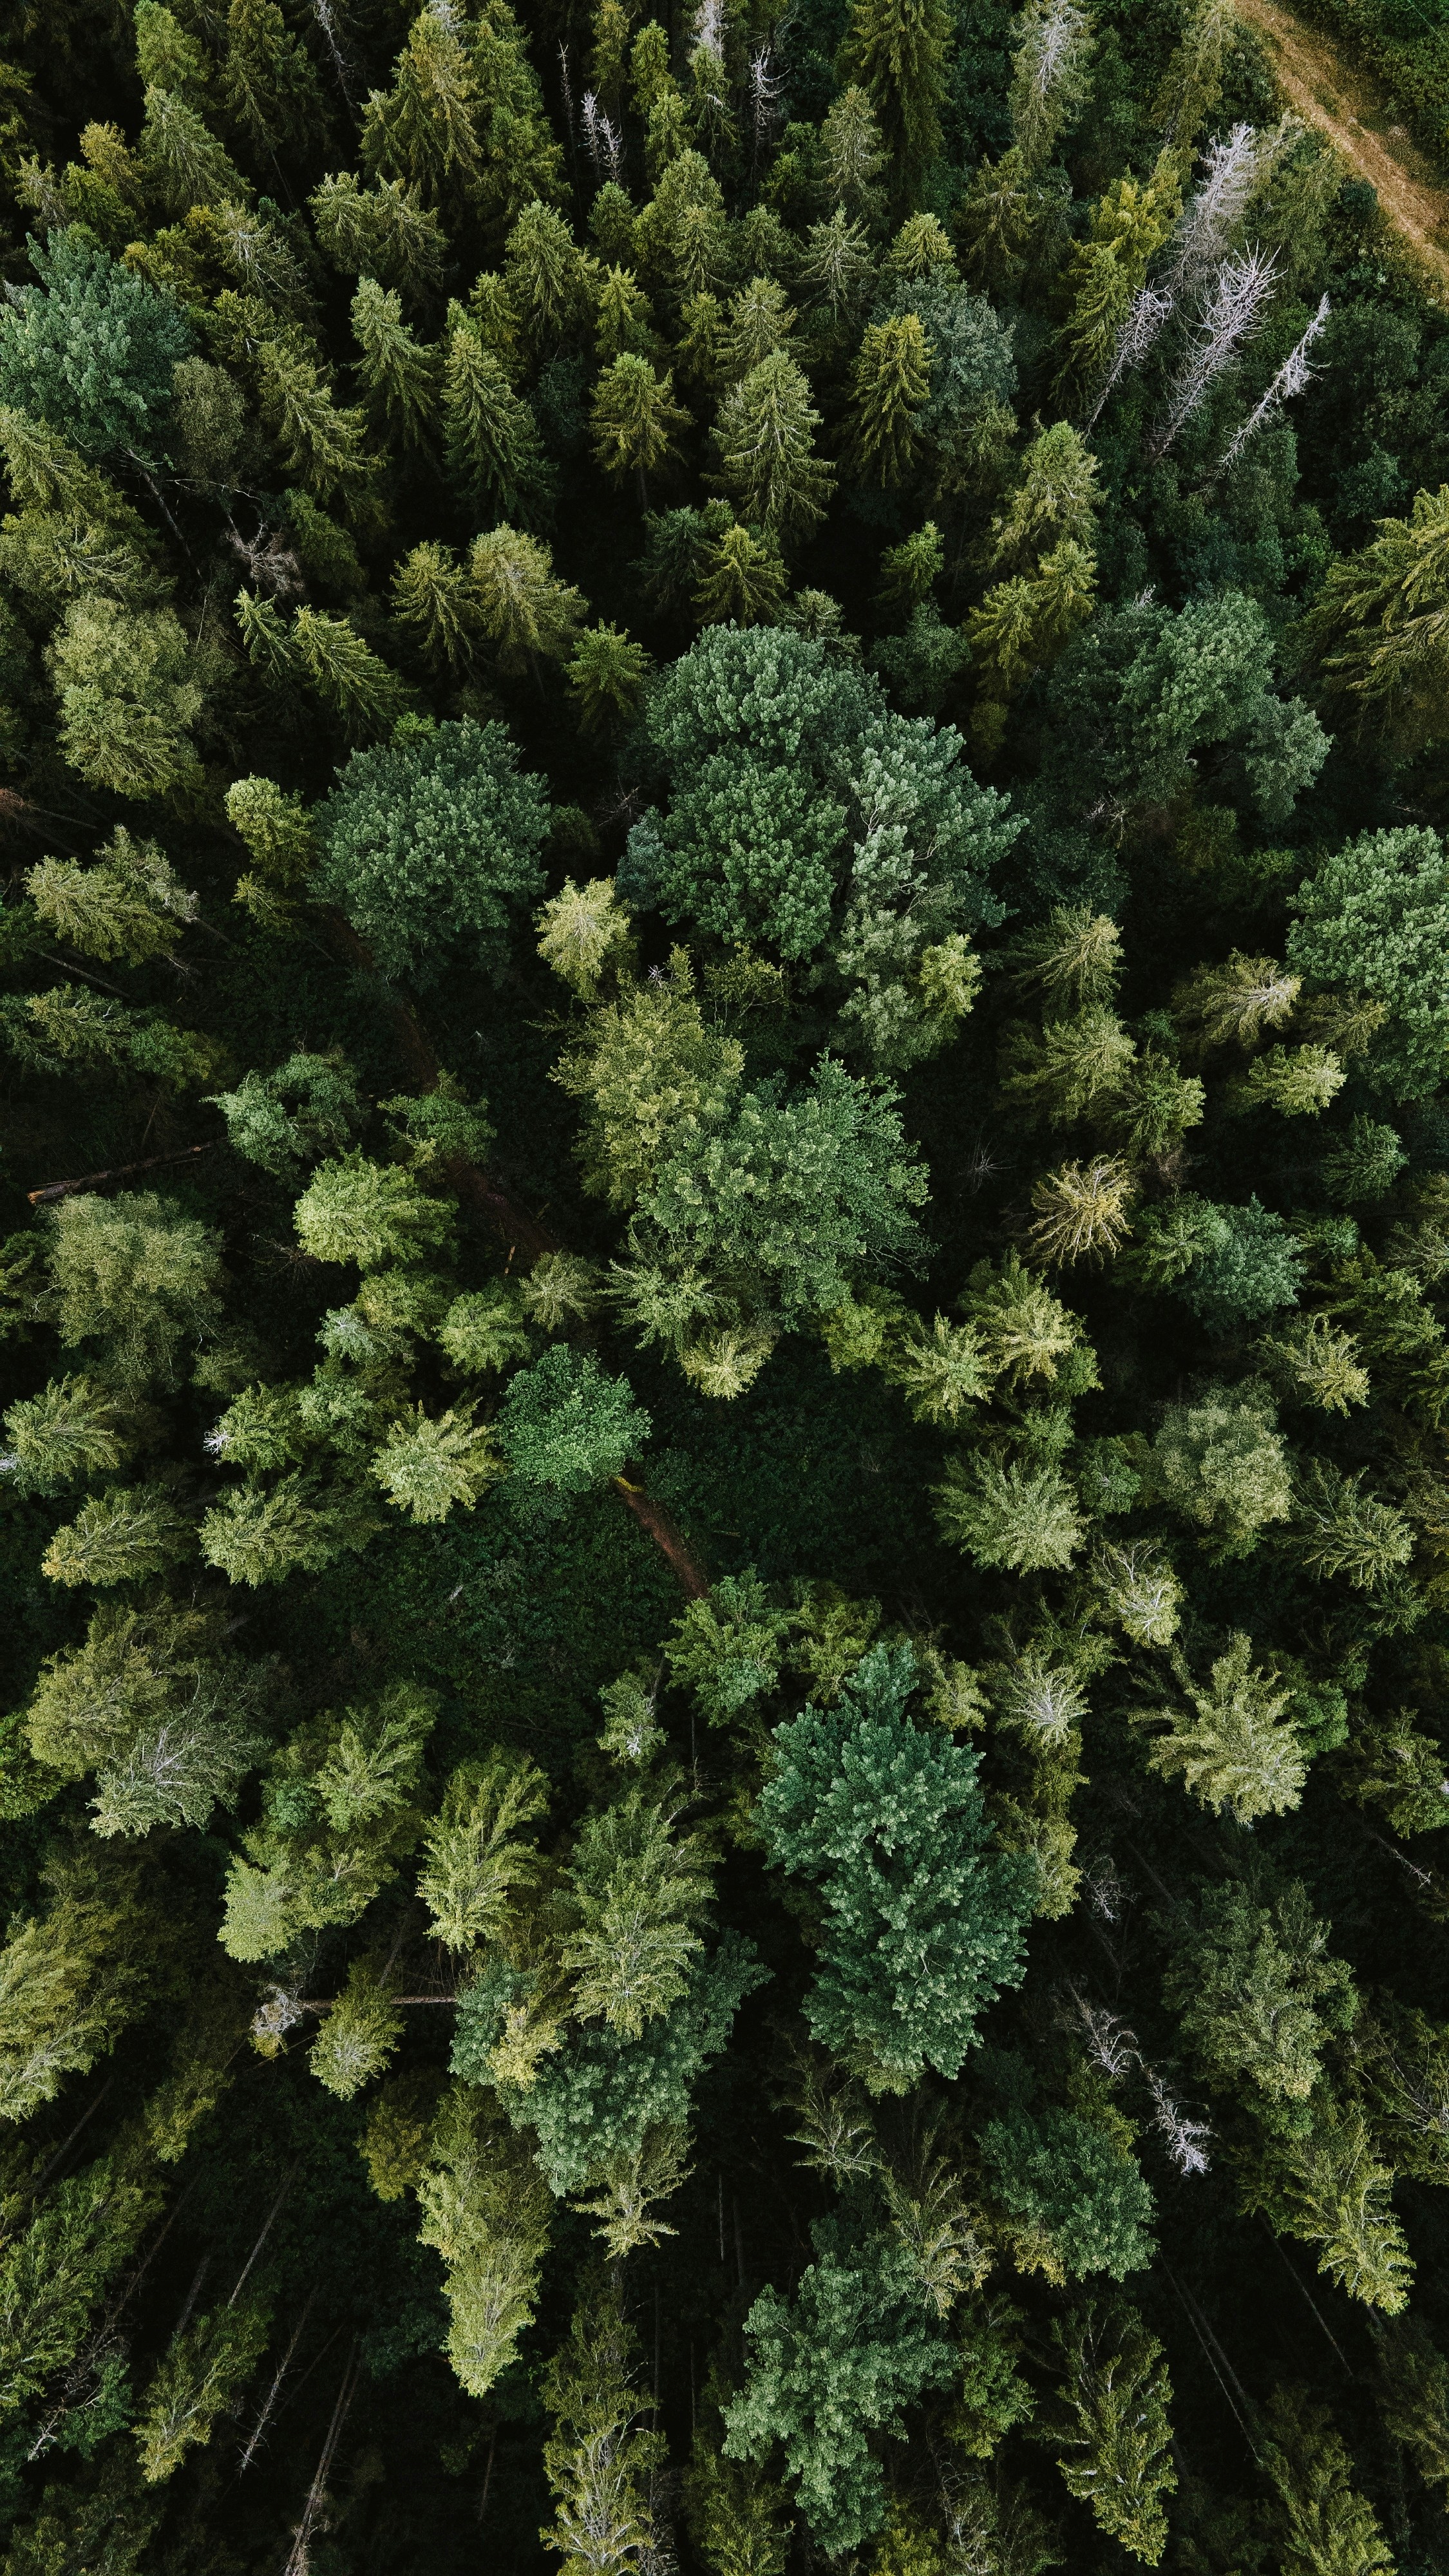 How Do You Navigate Through Dense Forests?